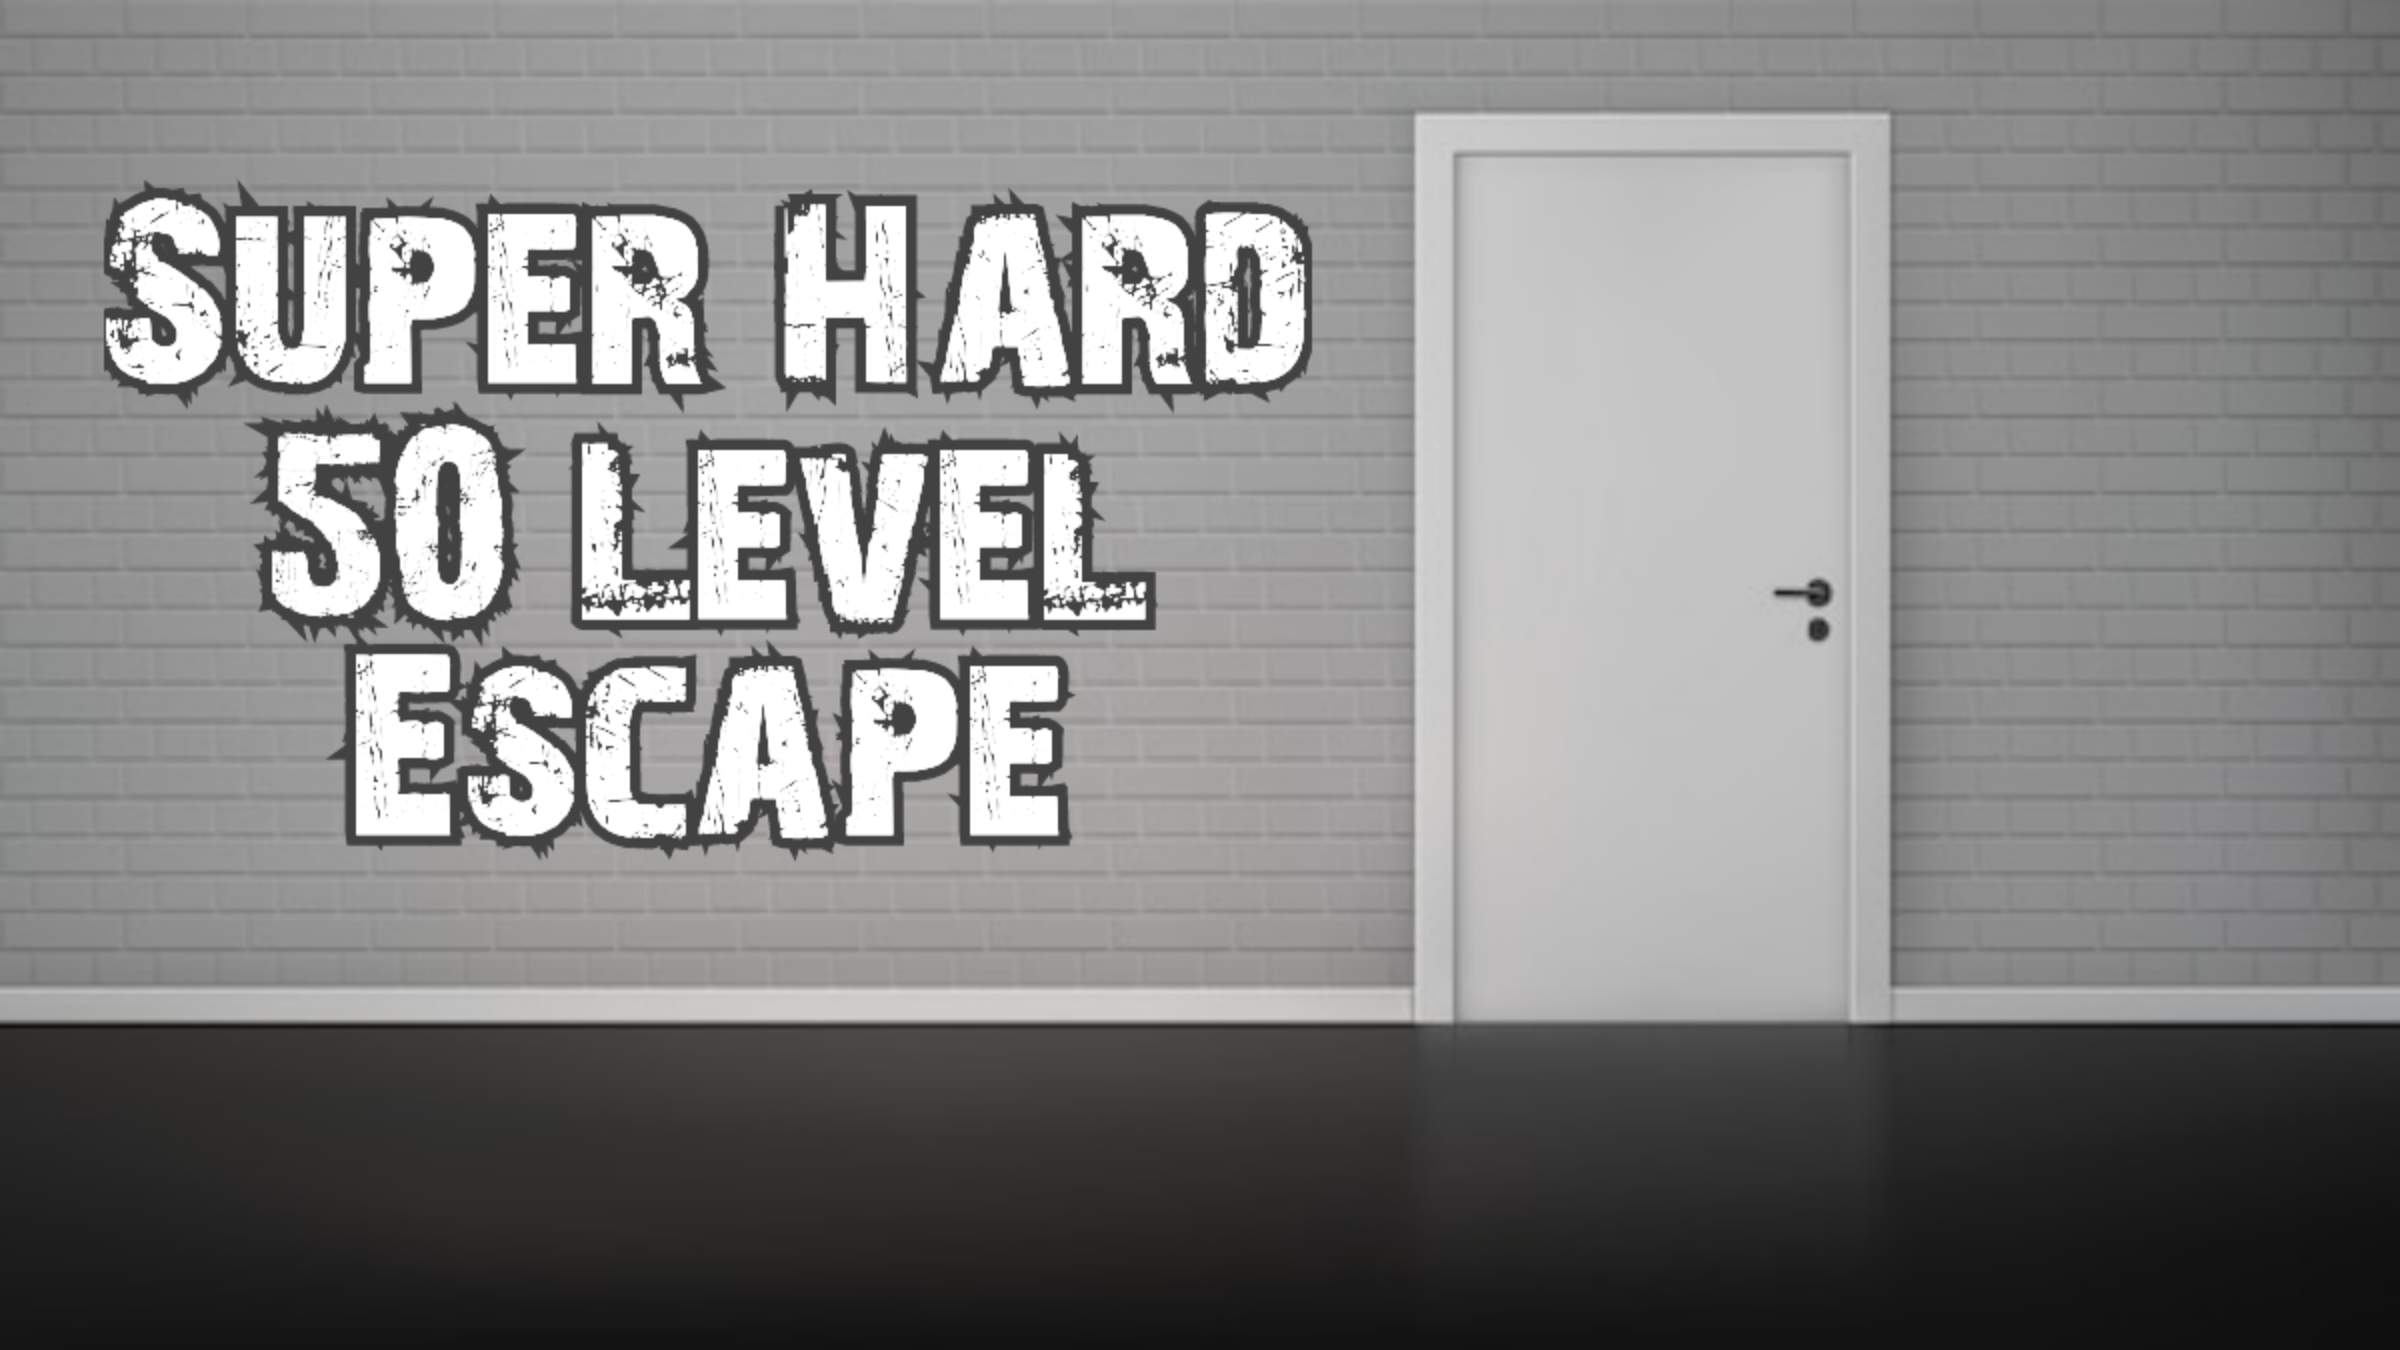 Super Hard 50 Level Escape